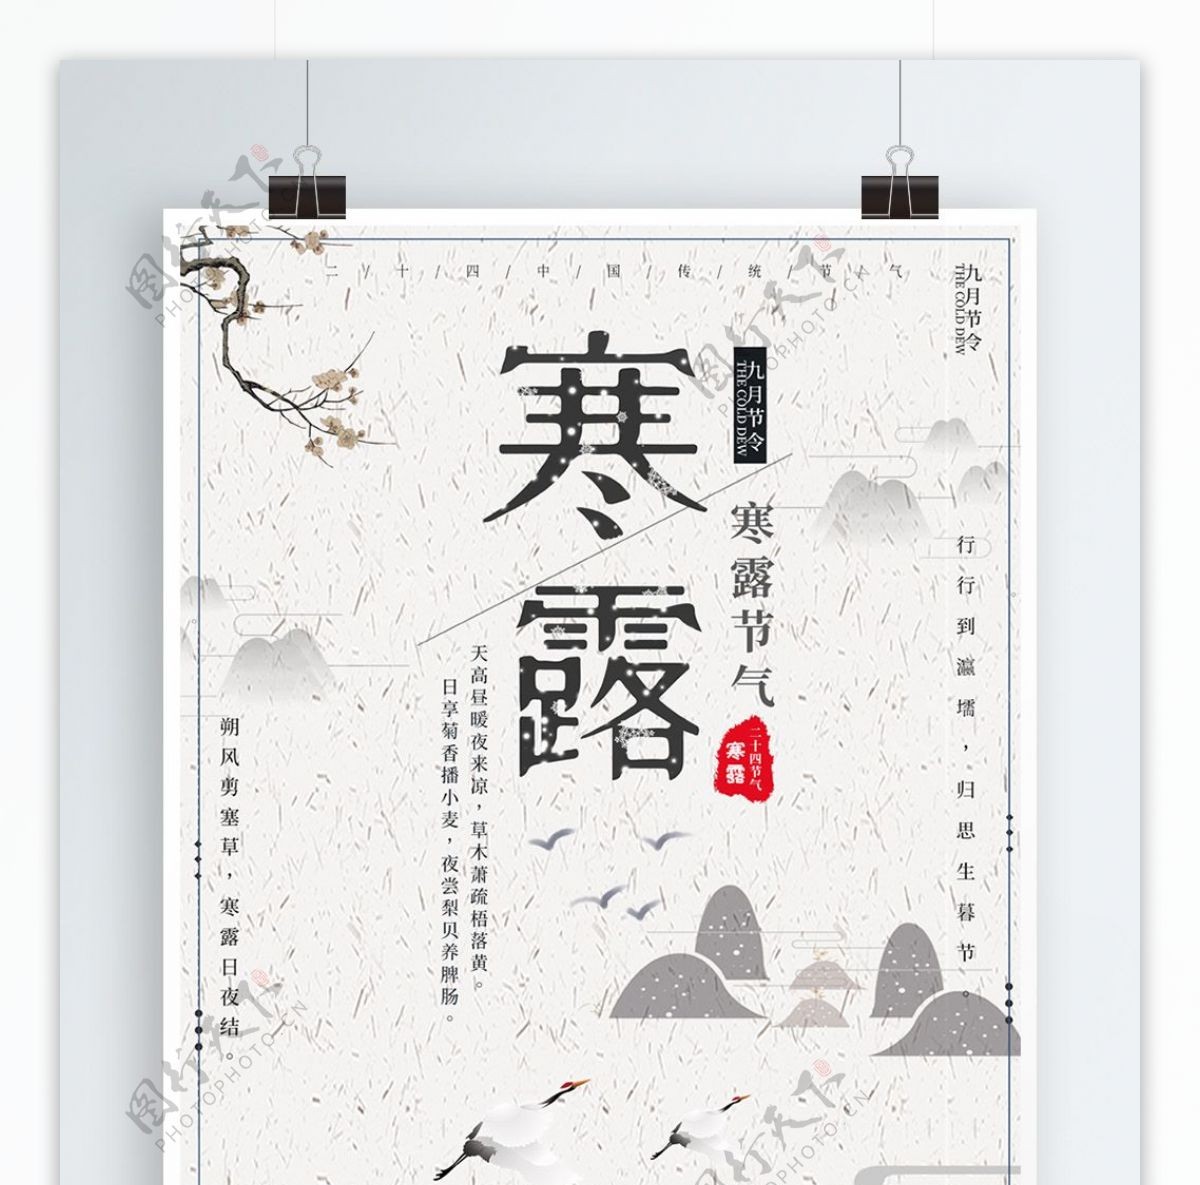 平面中国风简洁清新创意寒露节气宣传海报